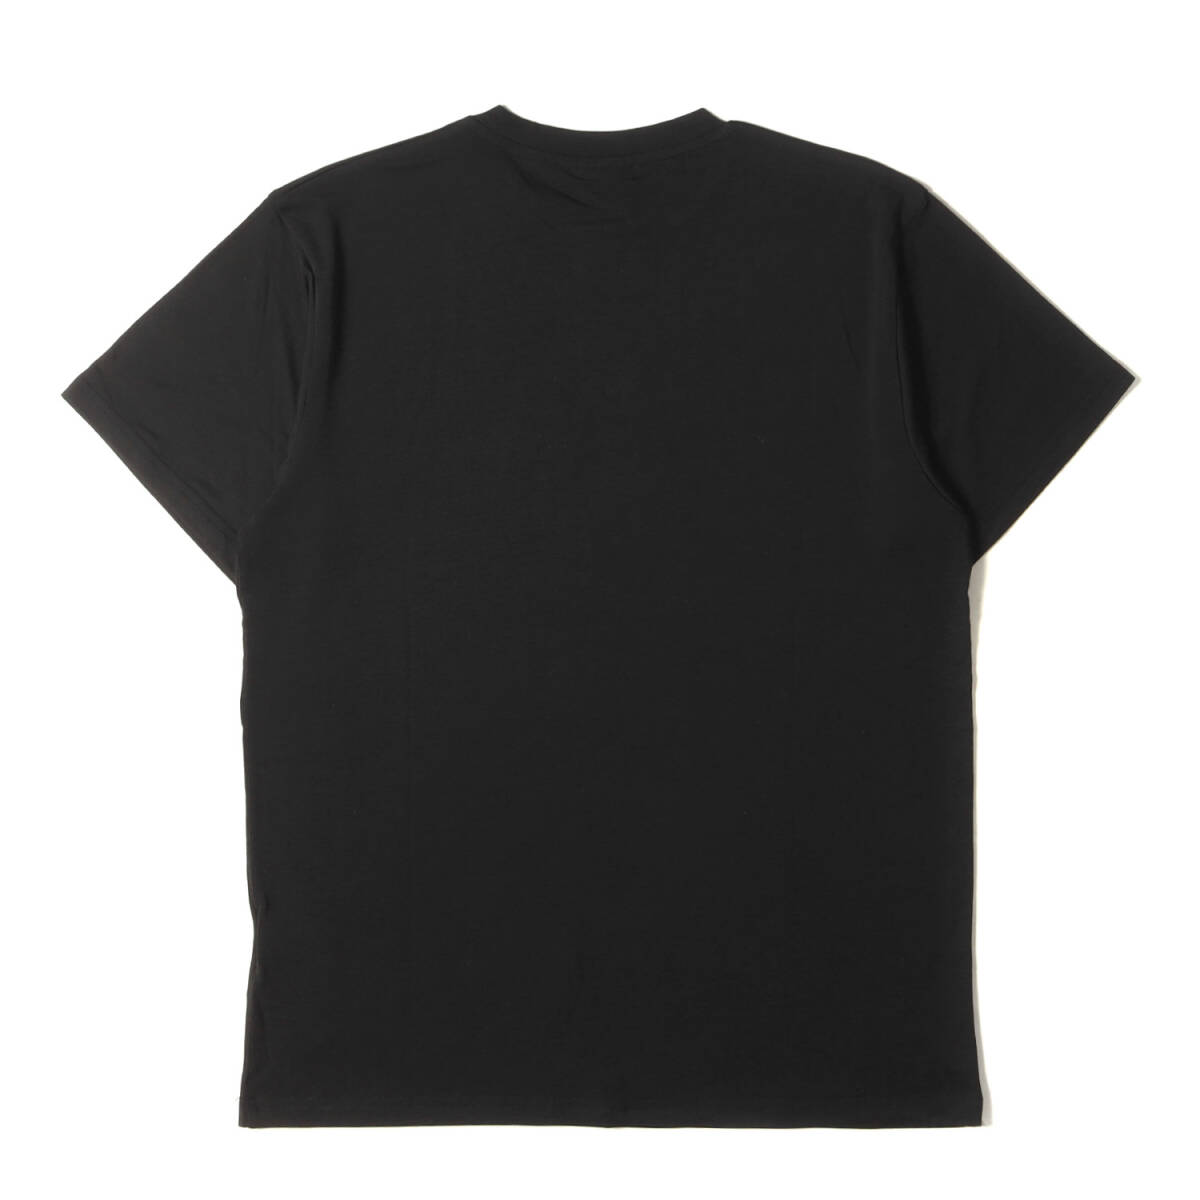 新品 F.C.Real Bristol エフシーレアルブリストル Tシャツ サイズ:M 21SS ミニエンブレム ストレッチ クルーネック 半袖Tシャツ ブラック_画像2